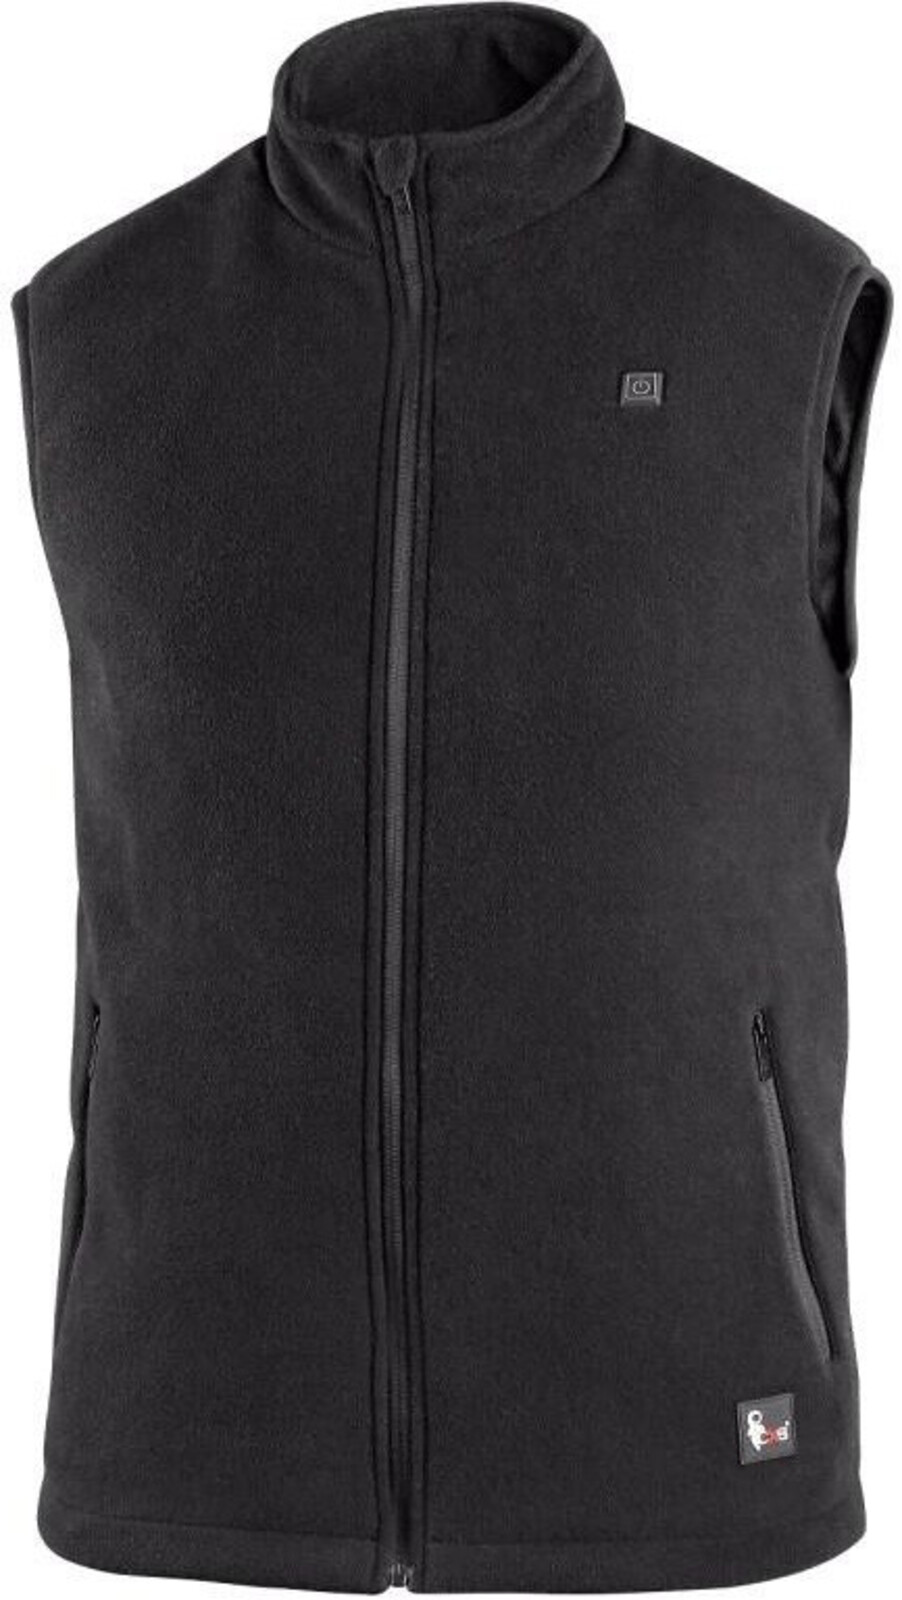 Pánska fleecová vyhrievaná vesta CXS Antarktida - veľkosť: XL, farba: čierna